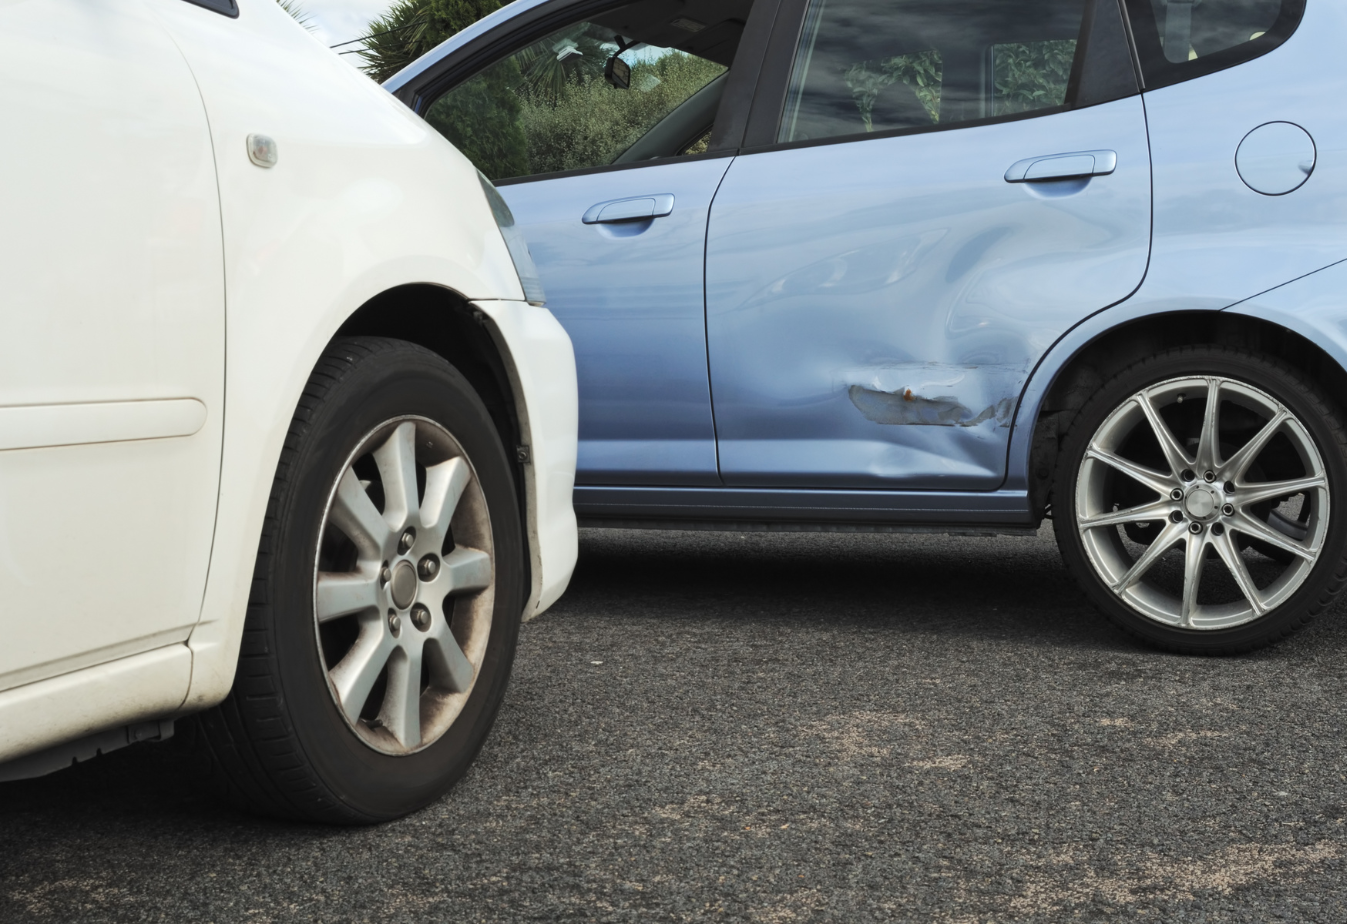 a t-bone accident where a white car hit a light blue sedan